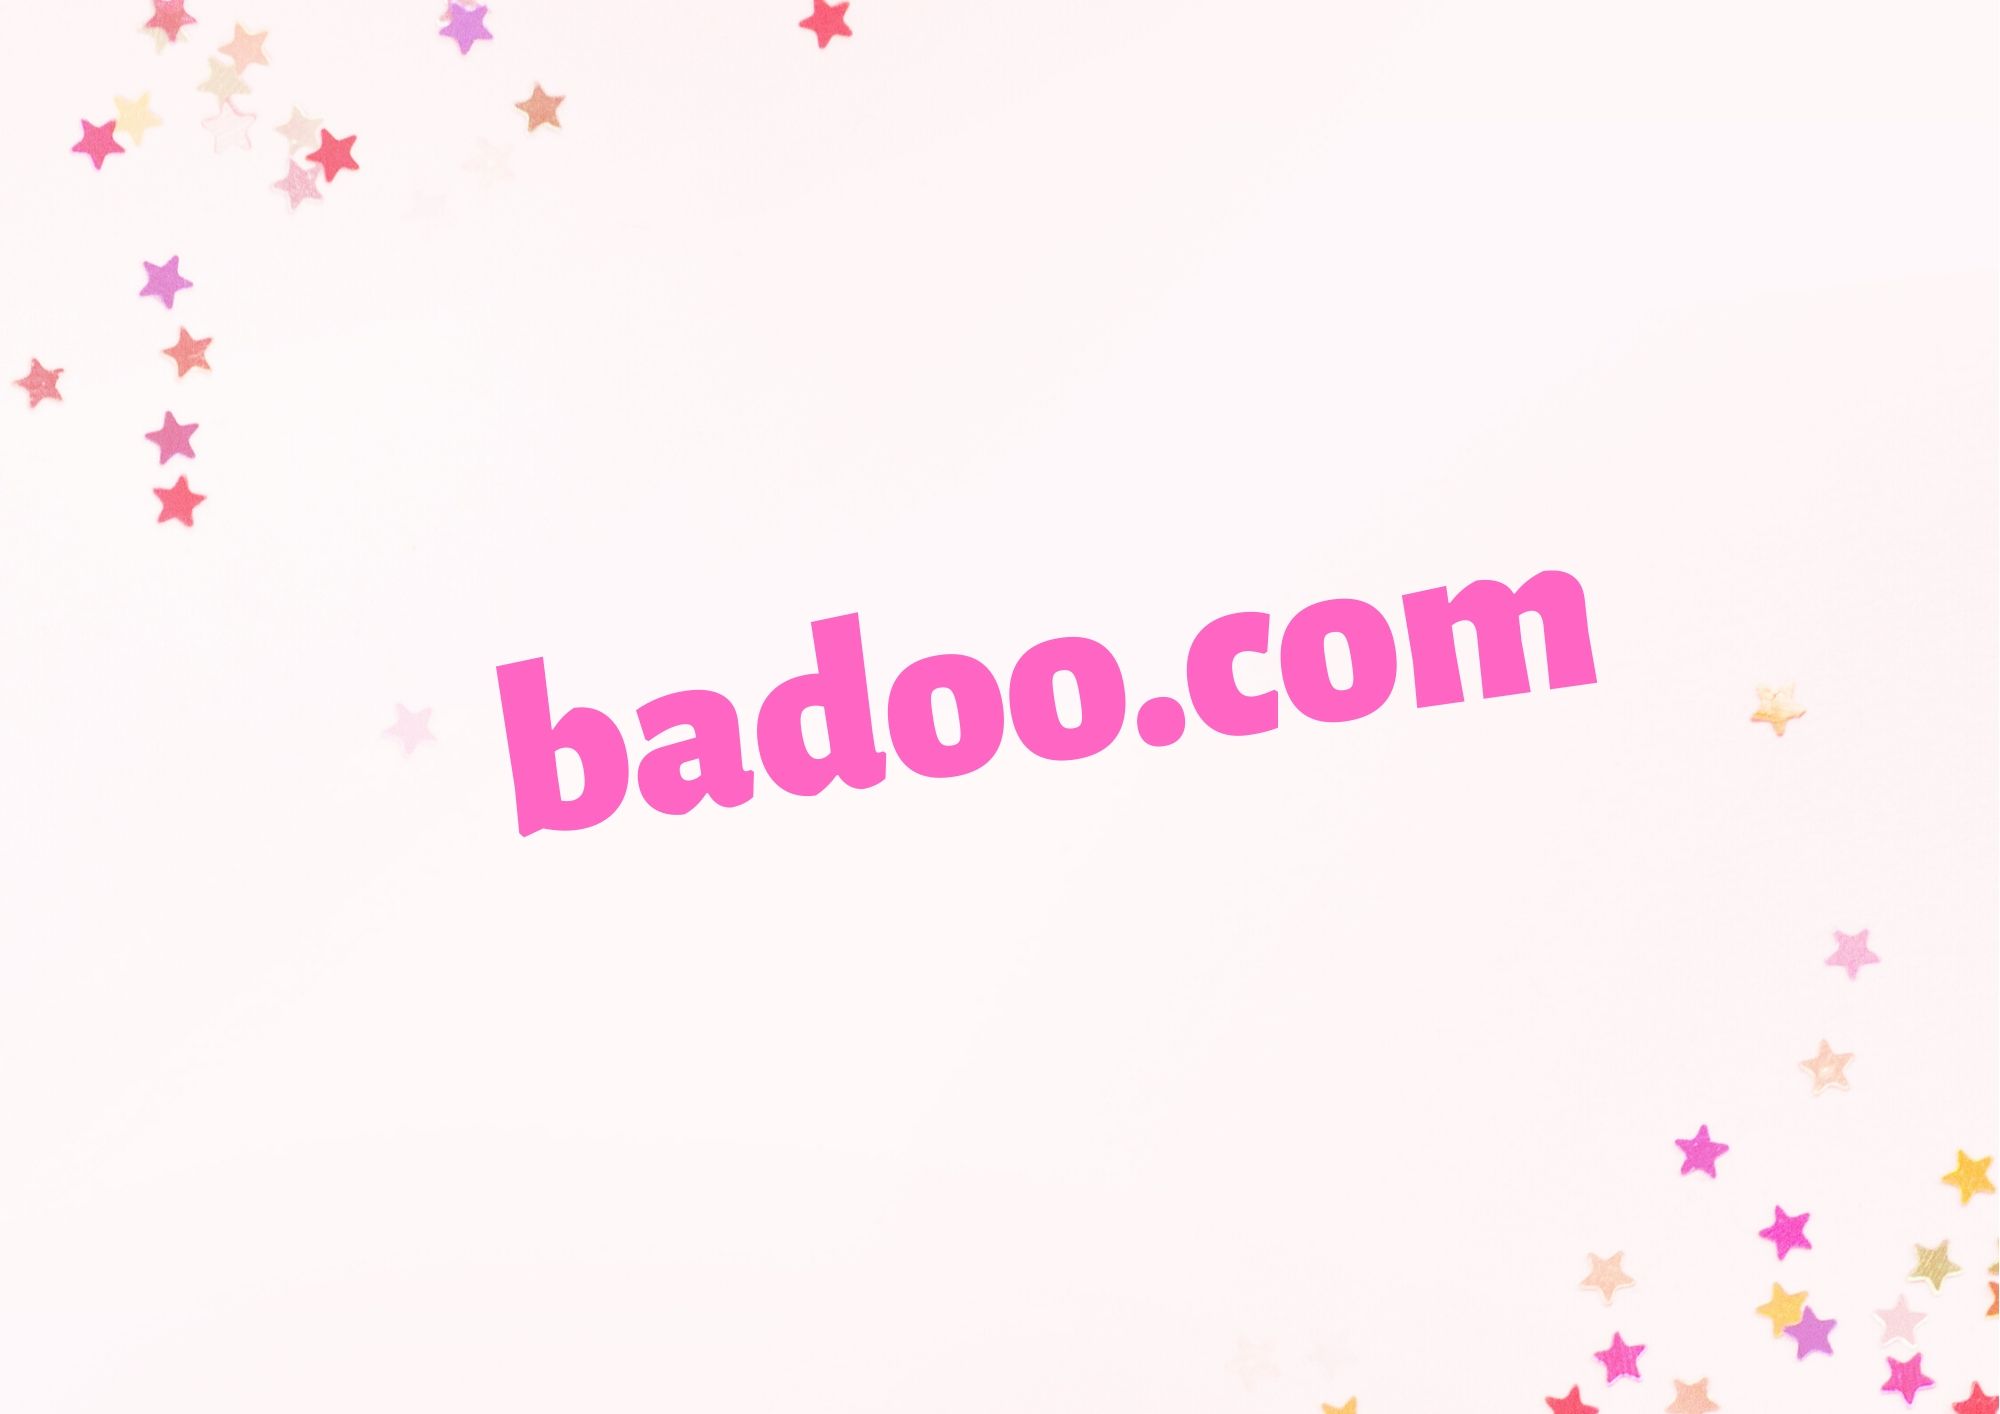 Facebooka badoo na z znajomi Badoo poznaj